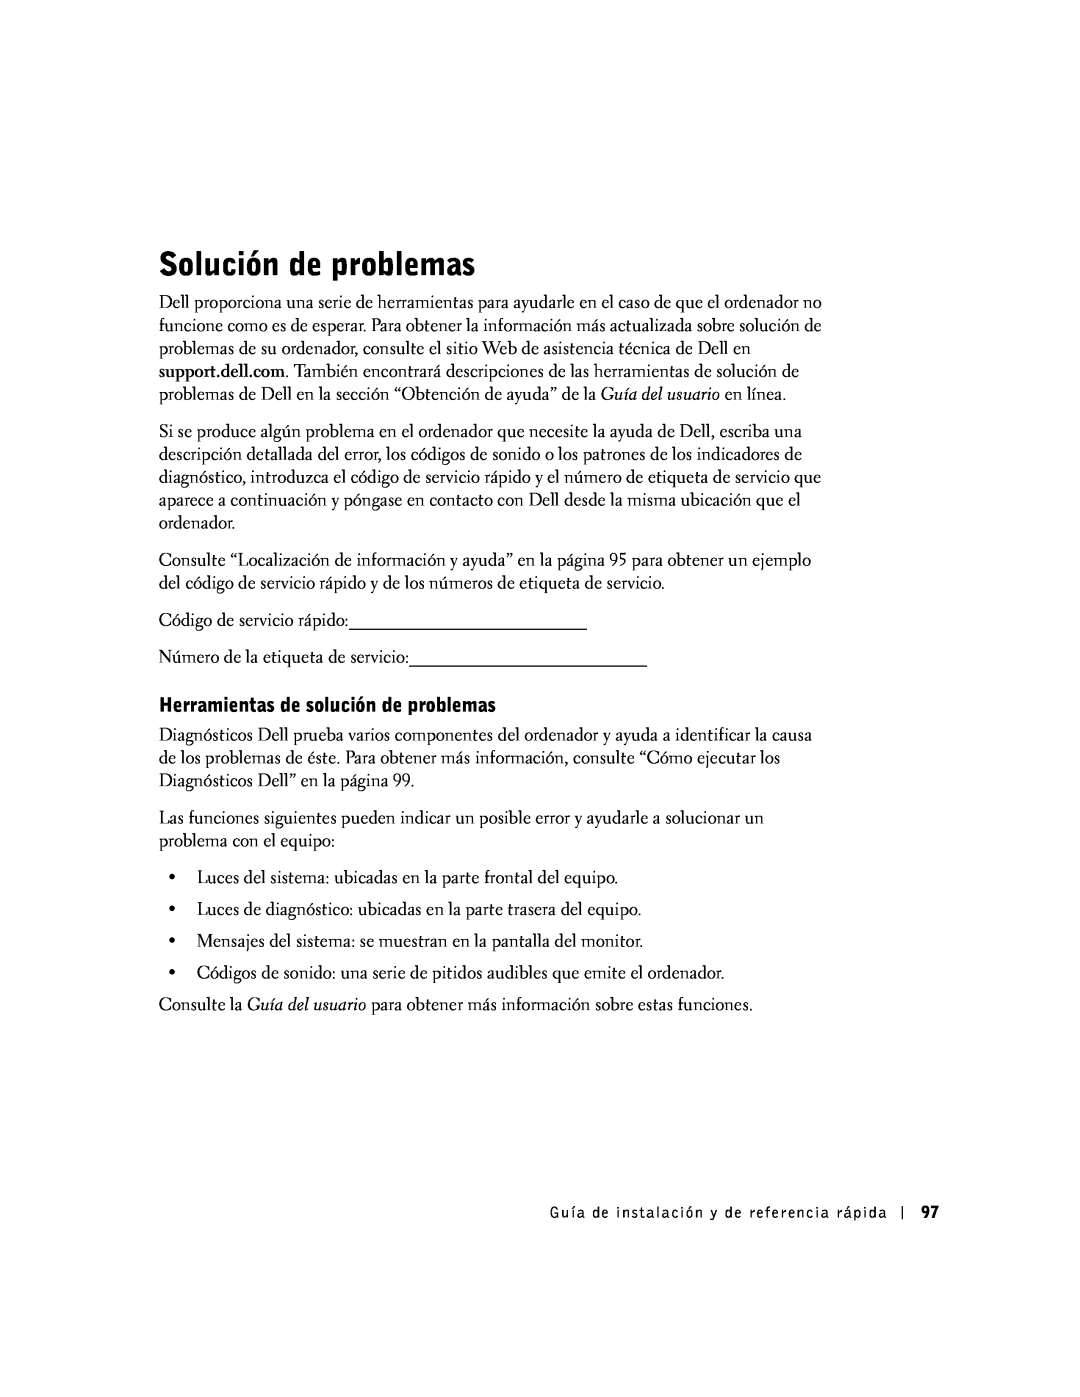 Dell SX manual Solución de problemas, Herramientas de solución de problemas 